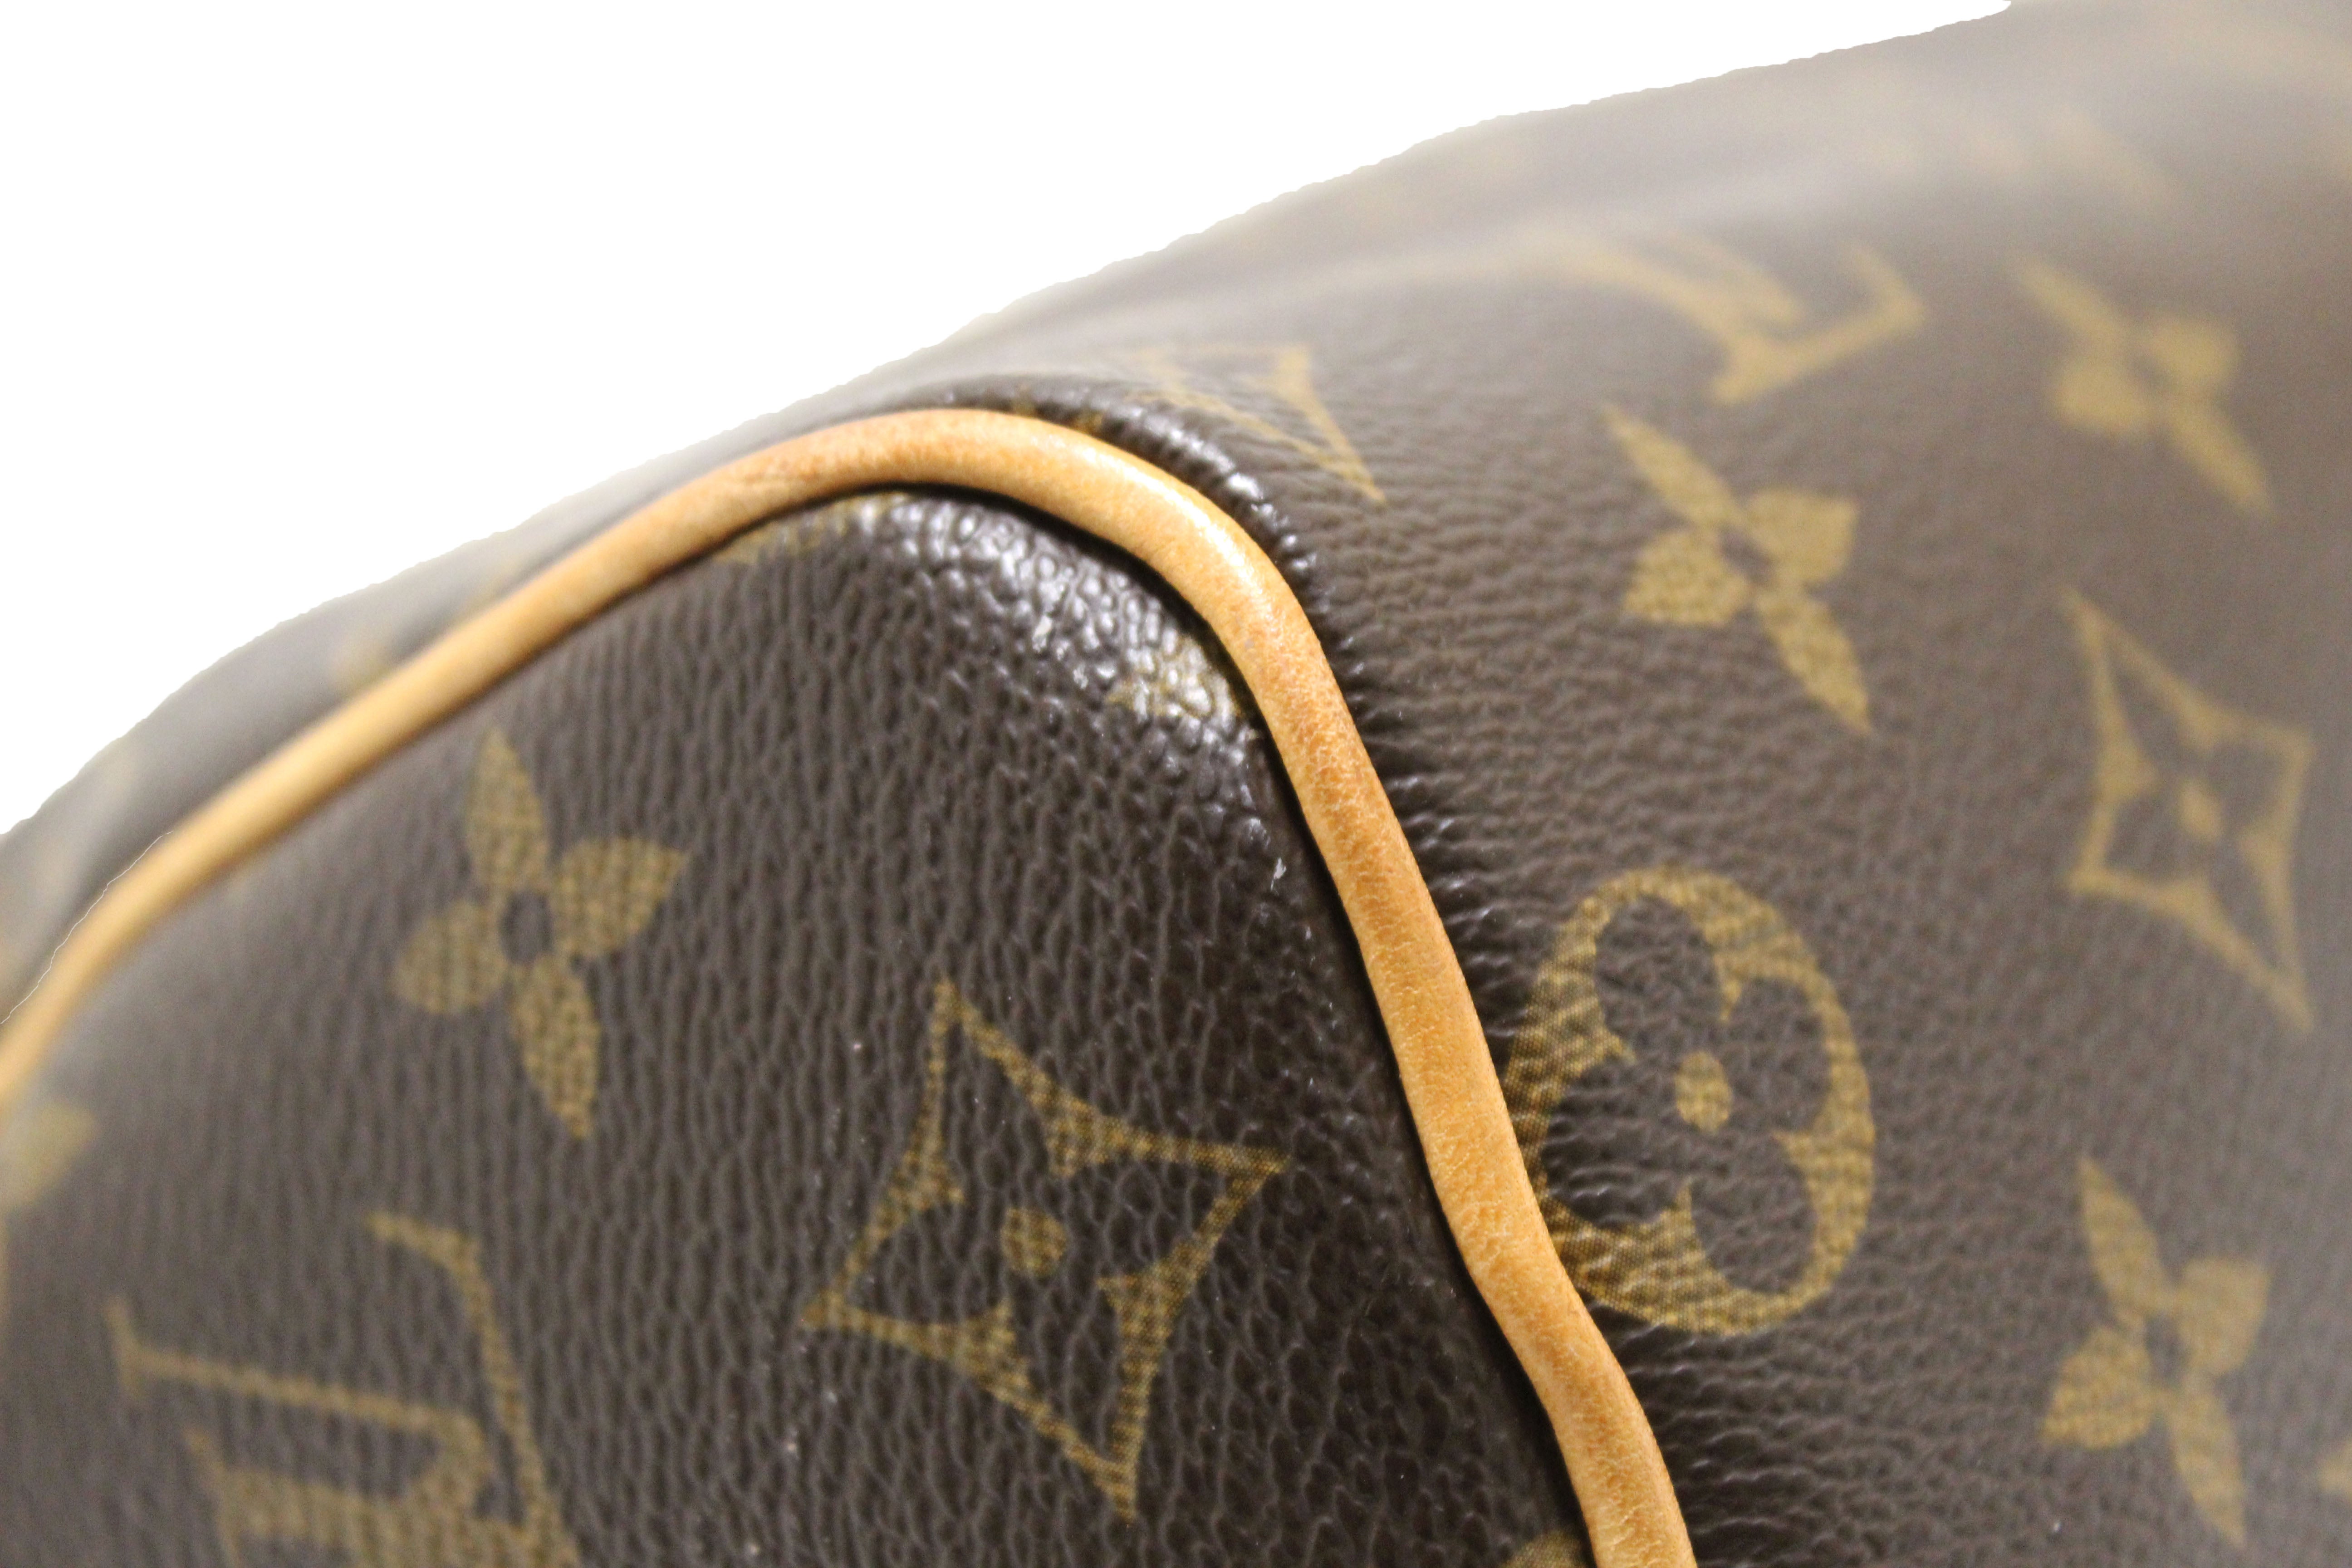 Auth Louis Vuitton Vintage Monogram Speedy 25 Hand Bag 0K180010n